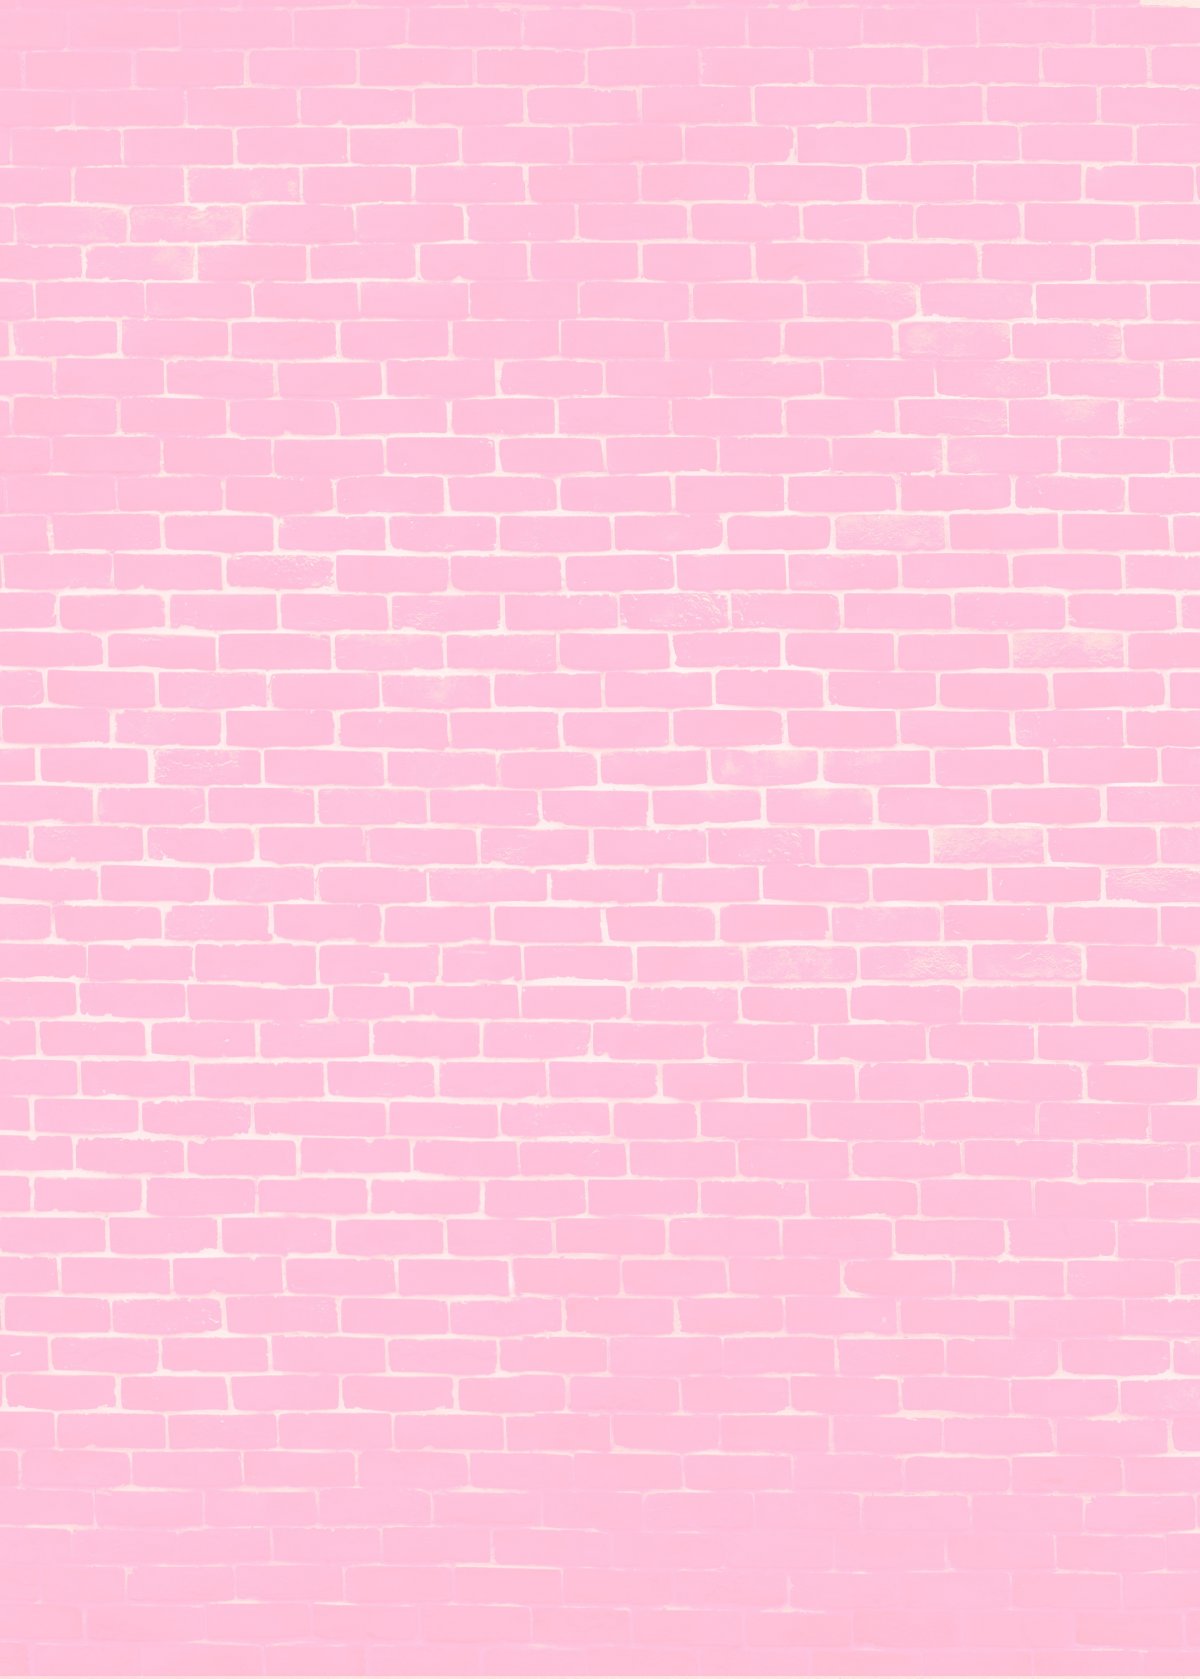 粉红色砖墙背景图片,高清图片